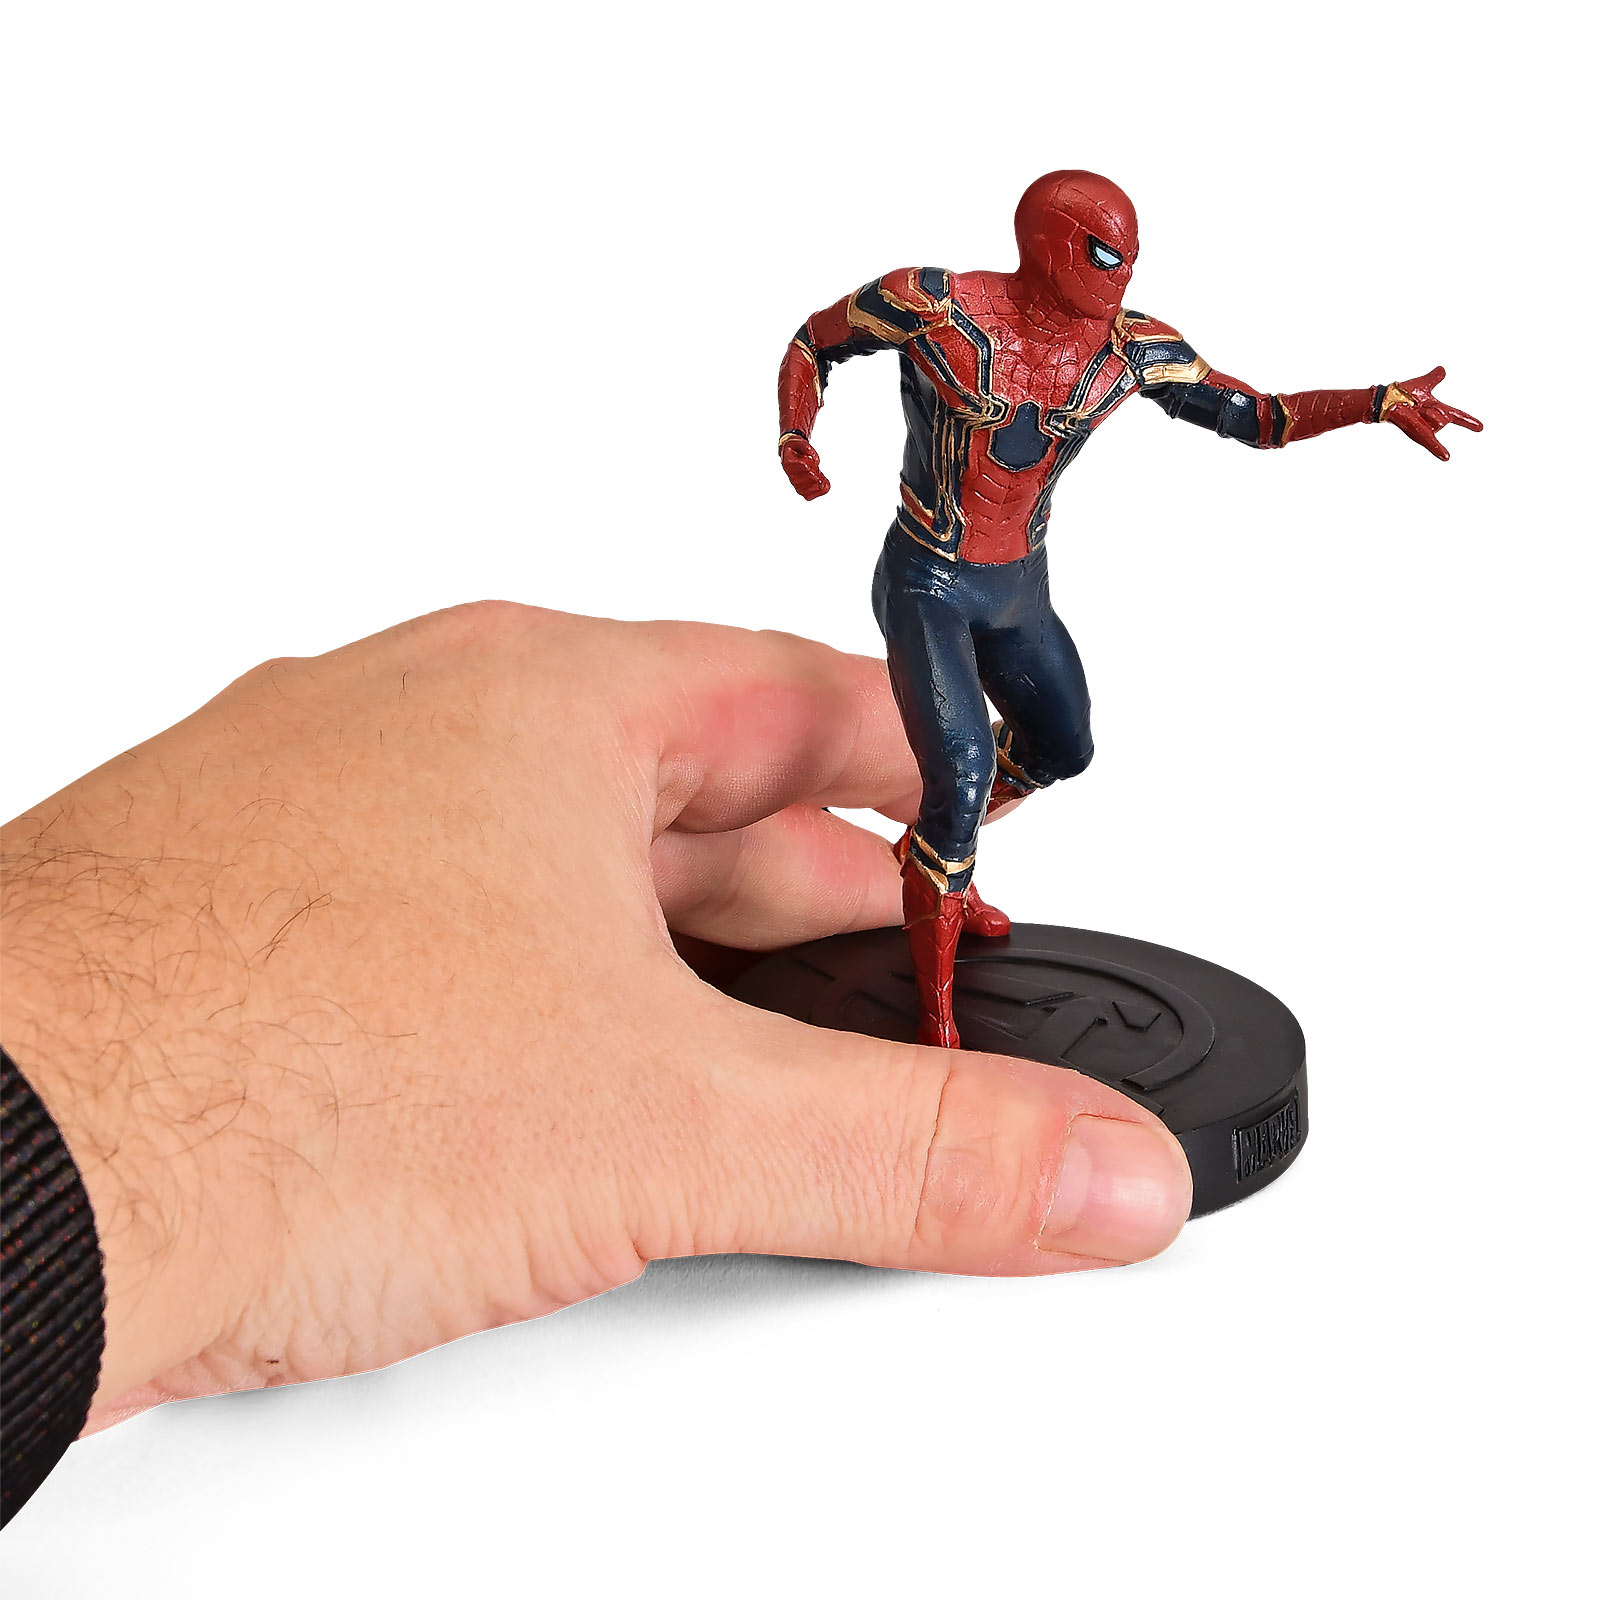 Figurine collector Spider-Man Hero 11 cm